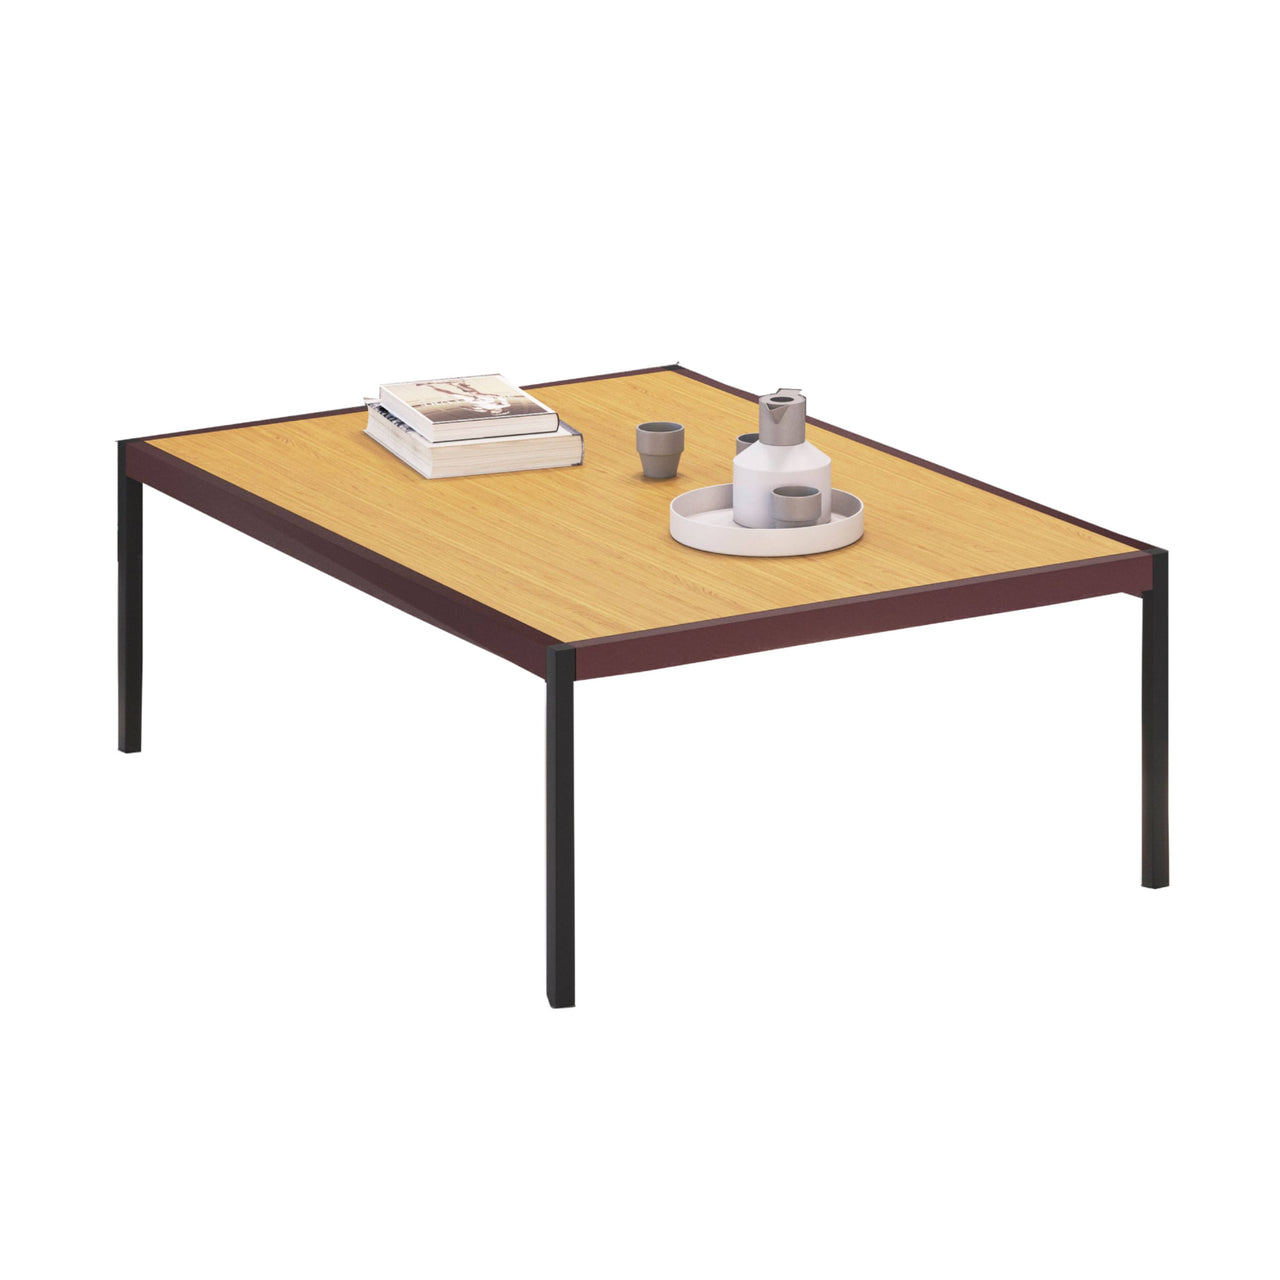 Grid Low Table: Larch veneer